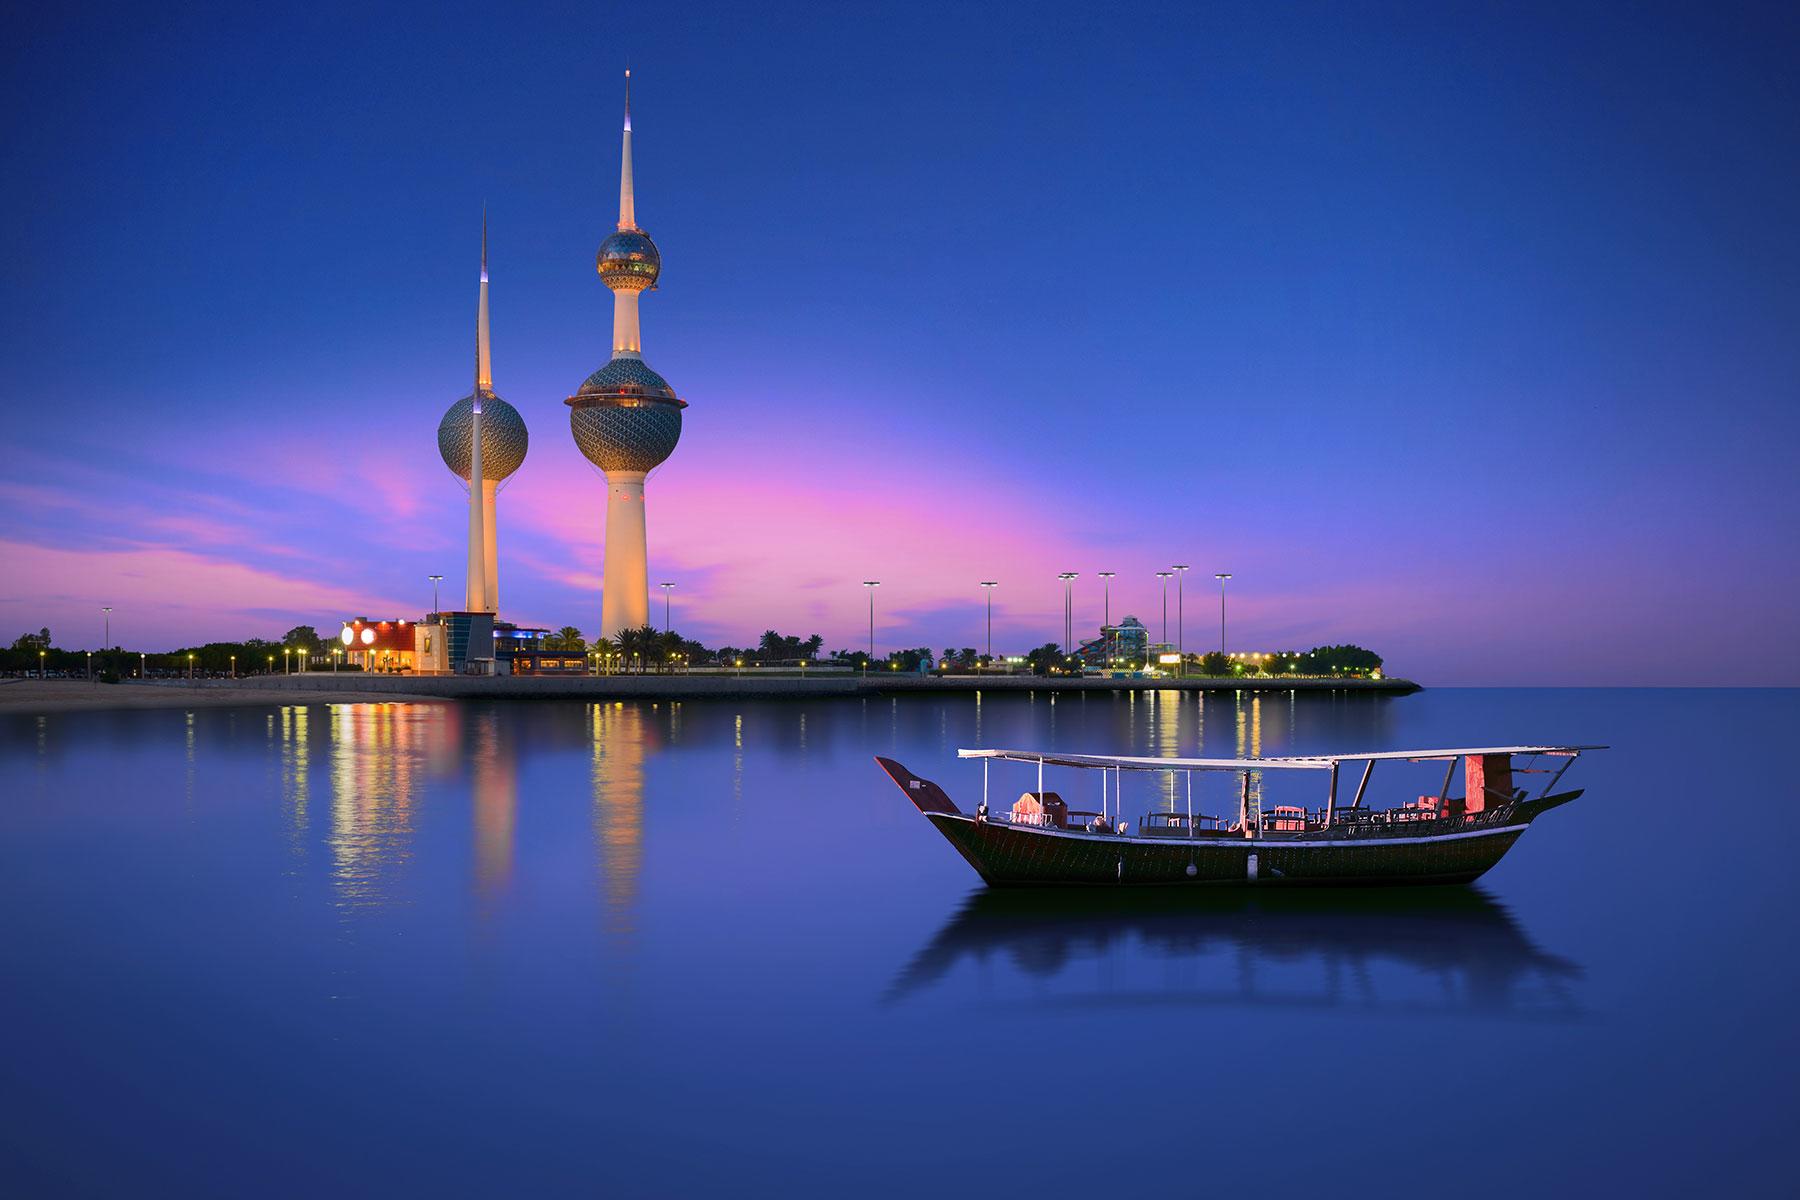 tourism in kuwait essay